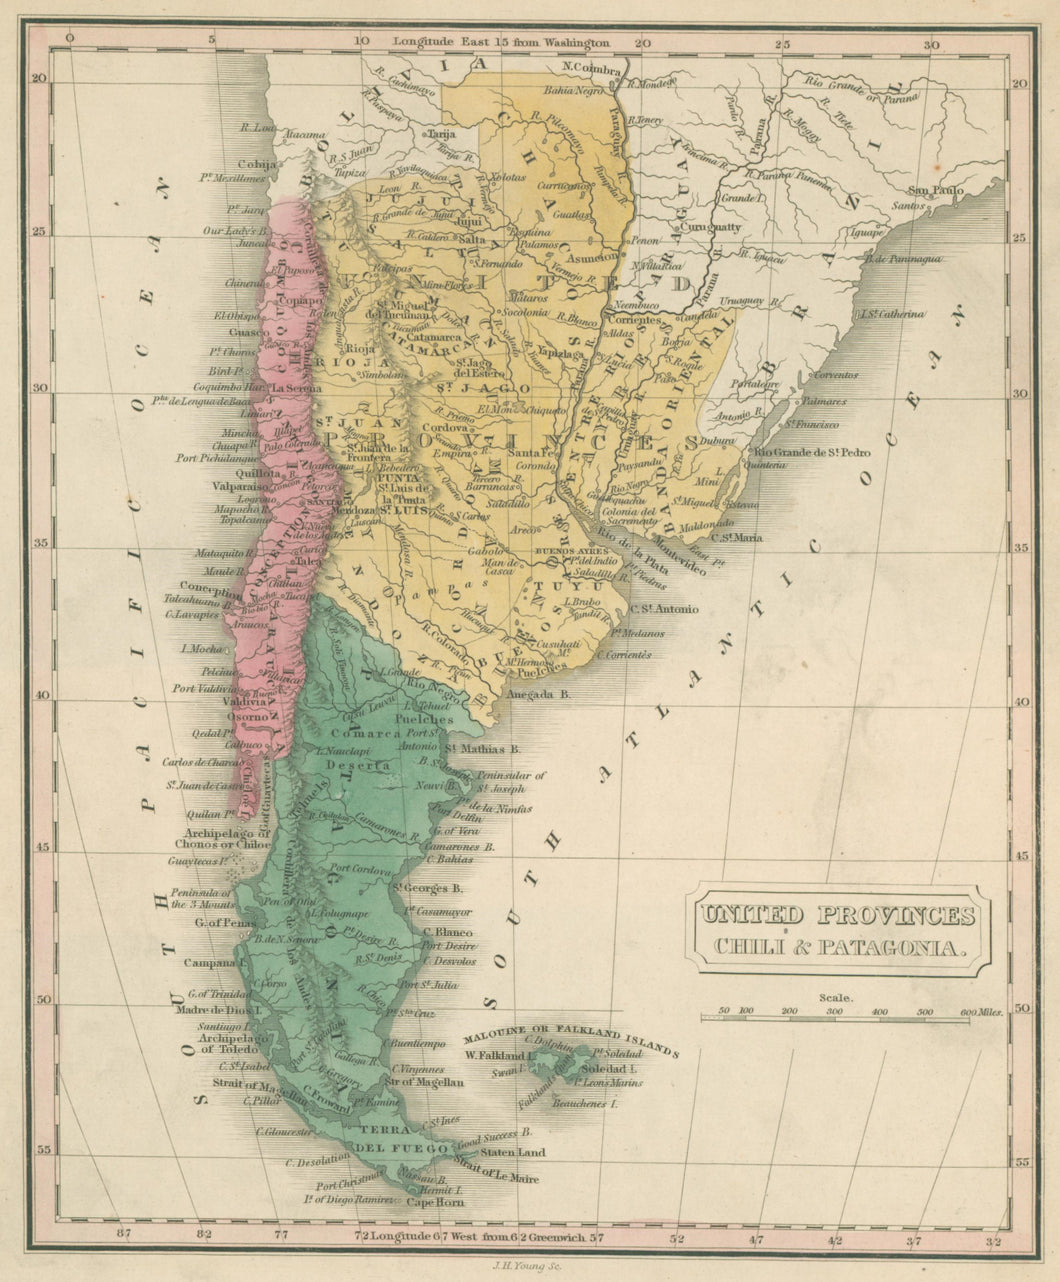 Malte-Brun, Conrad “United Provinces, Chili & Patagonia